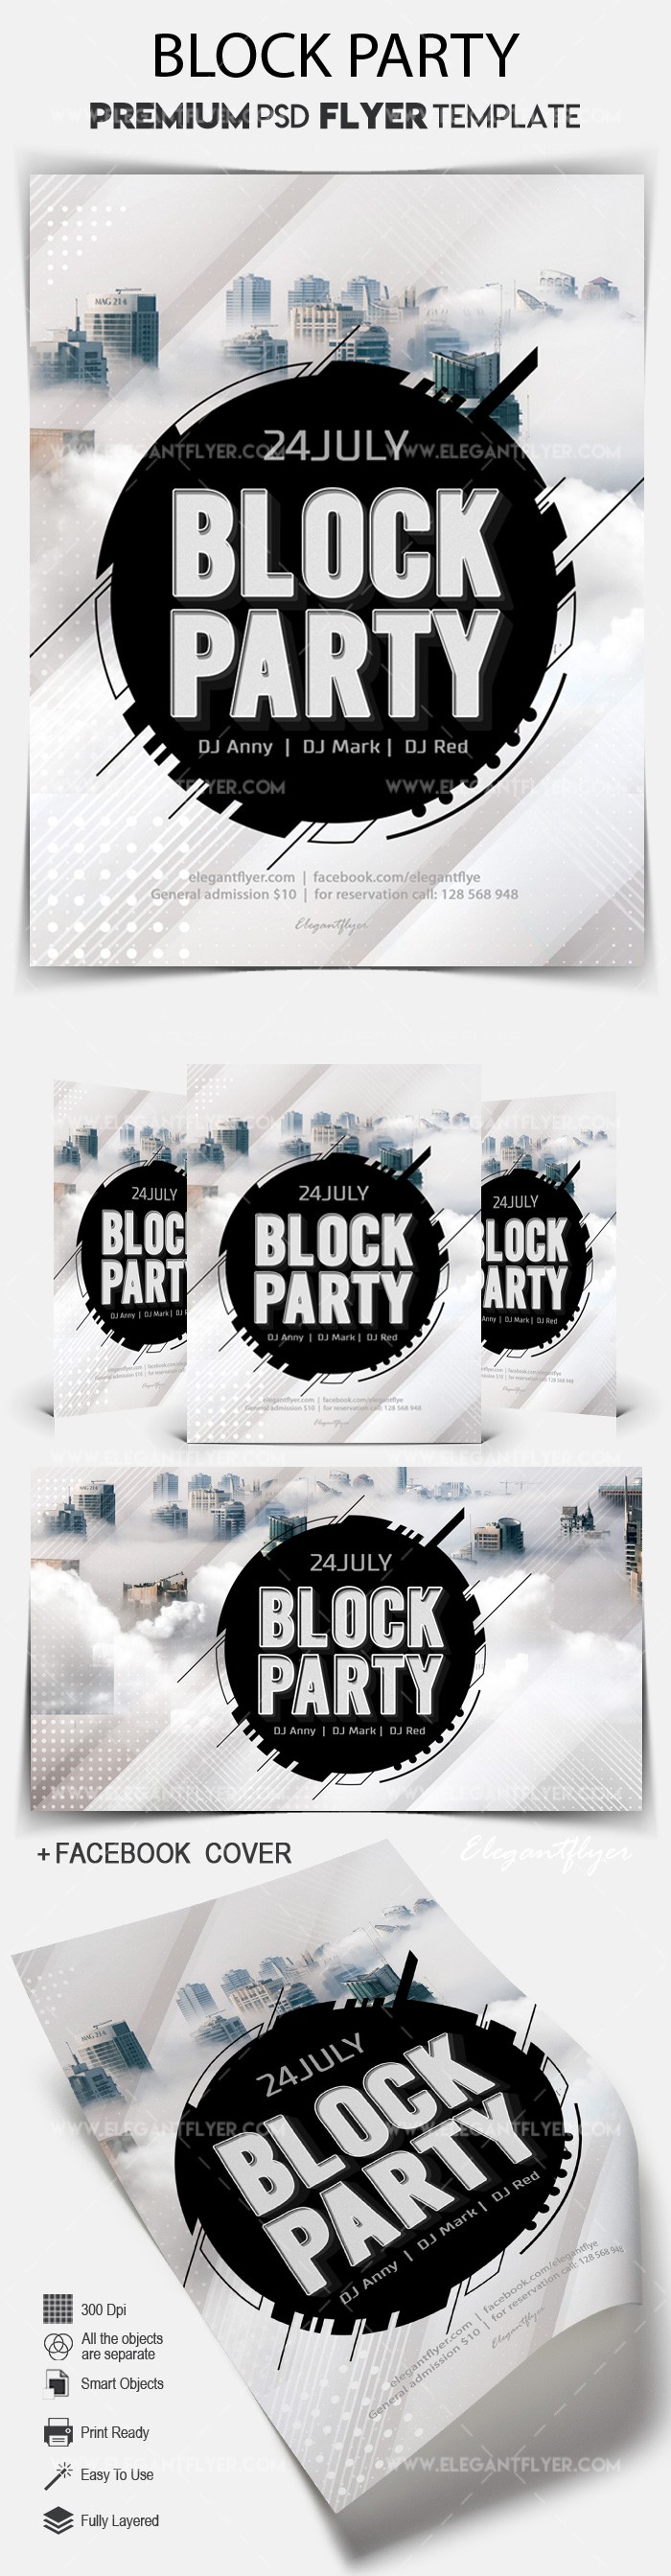 Block Party by ElegantFlyer